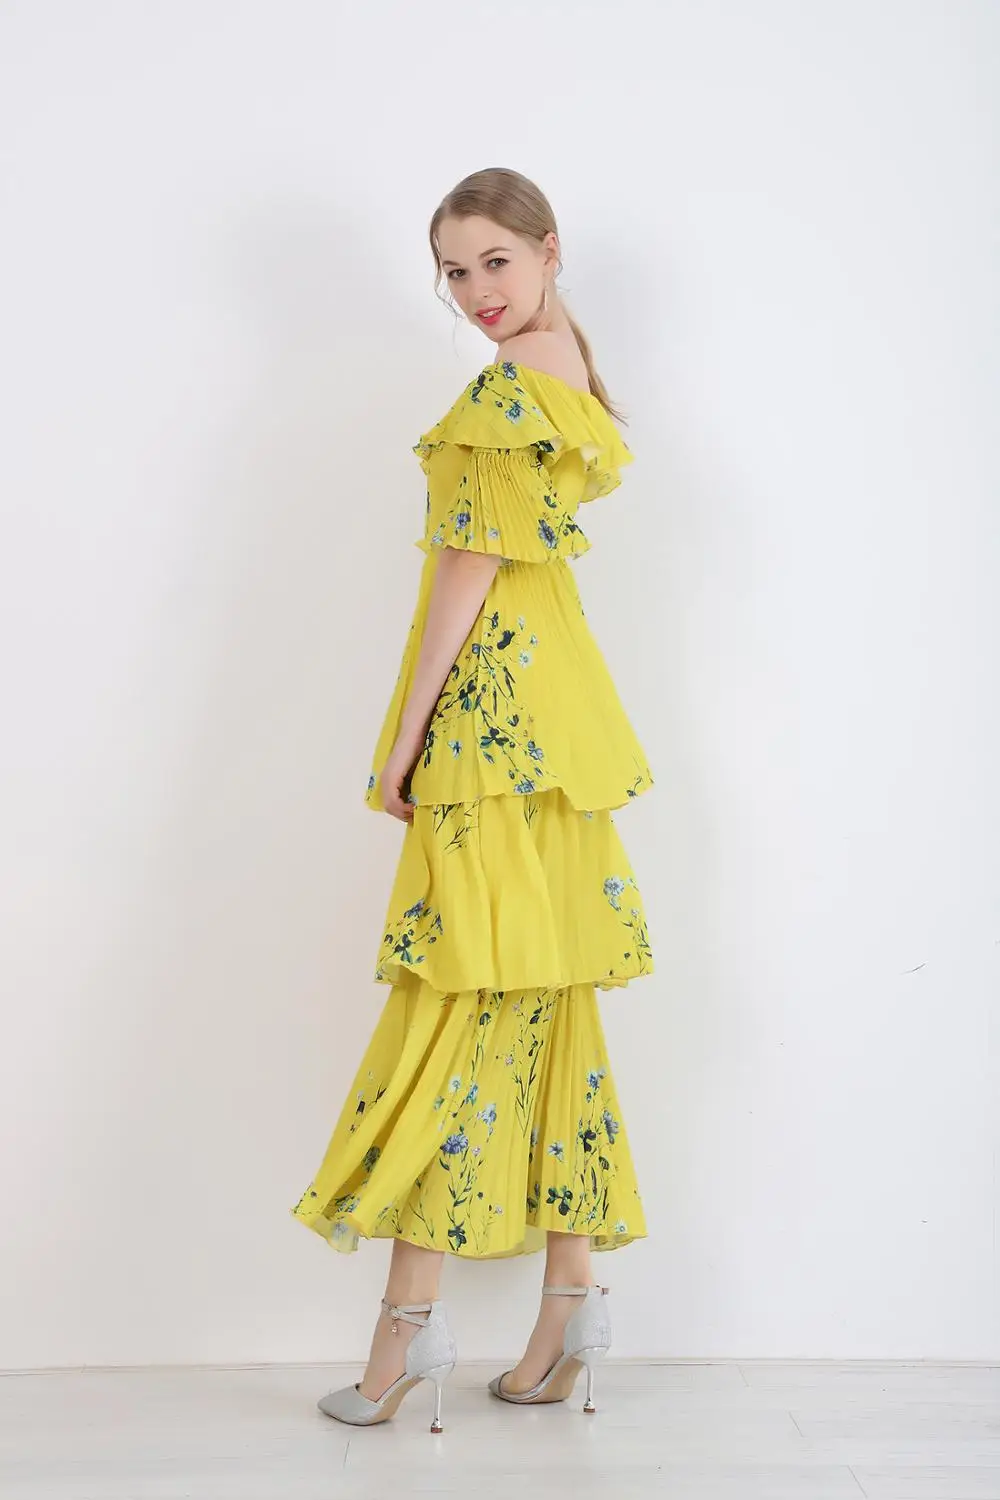 Женское длинное платье в богемном стиле SMTHMA, желтое дизайнерское платье из высококачественной ткани с принтом, плиссированными оборками, стильный подиумный наряд